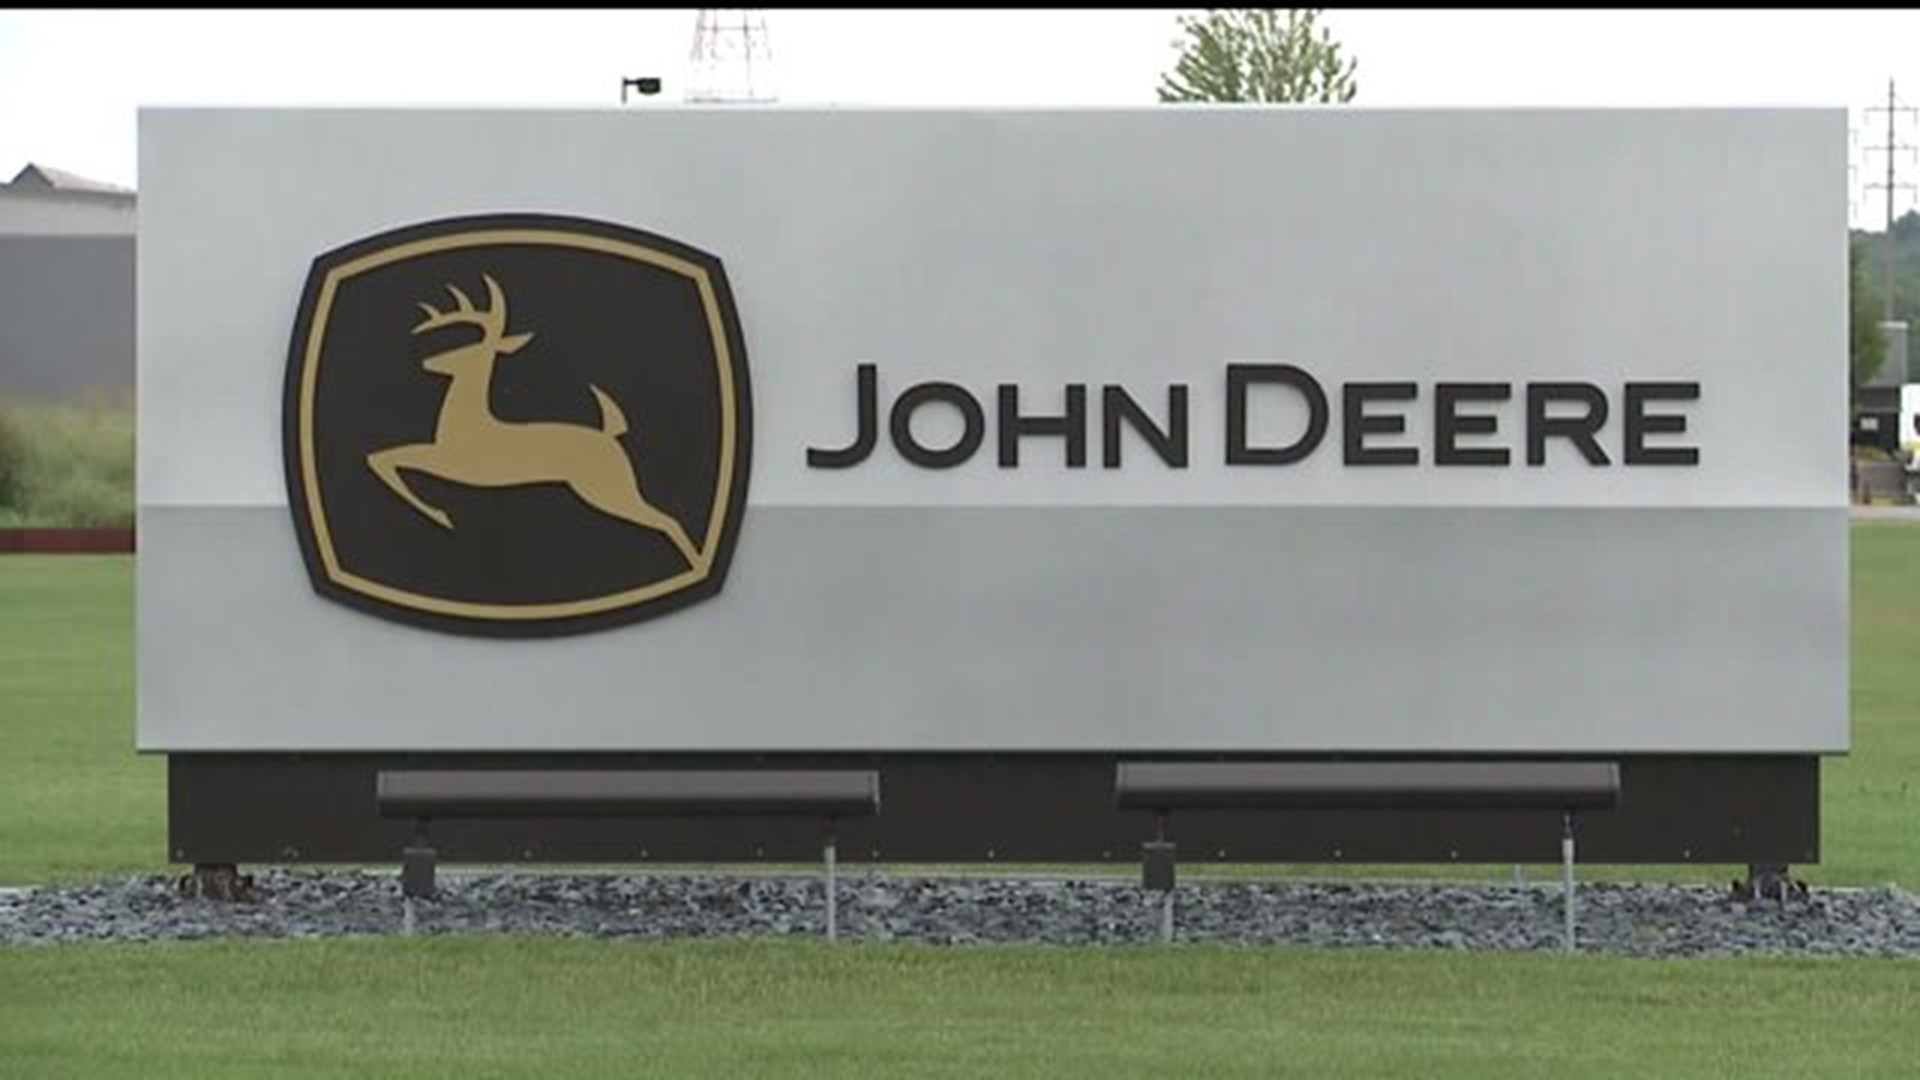 John Deere contract negotiations